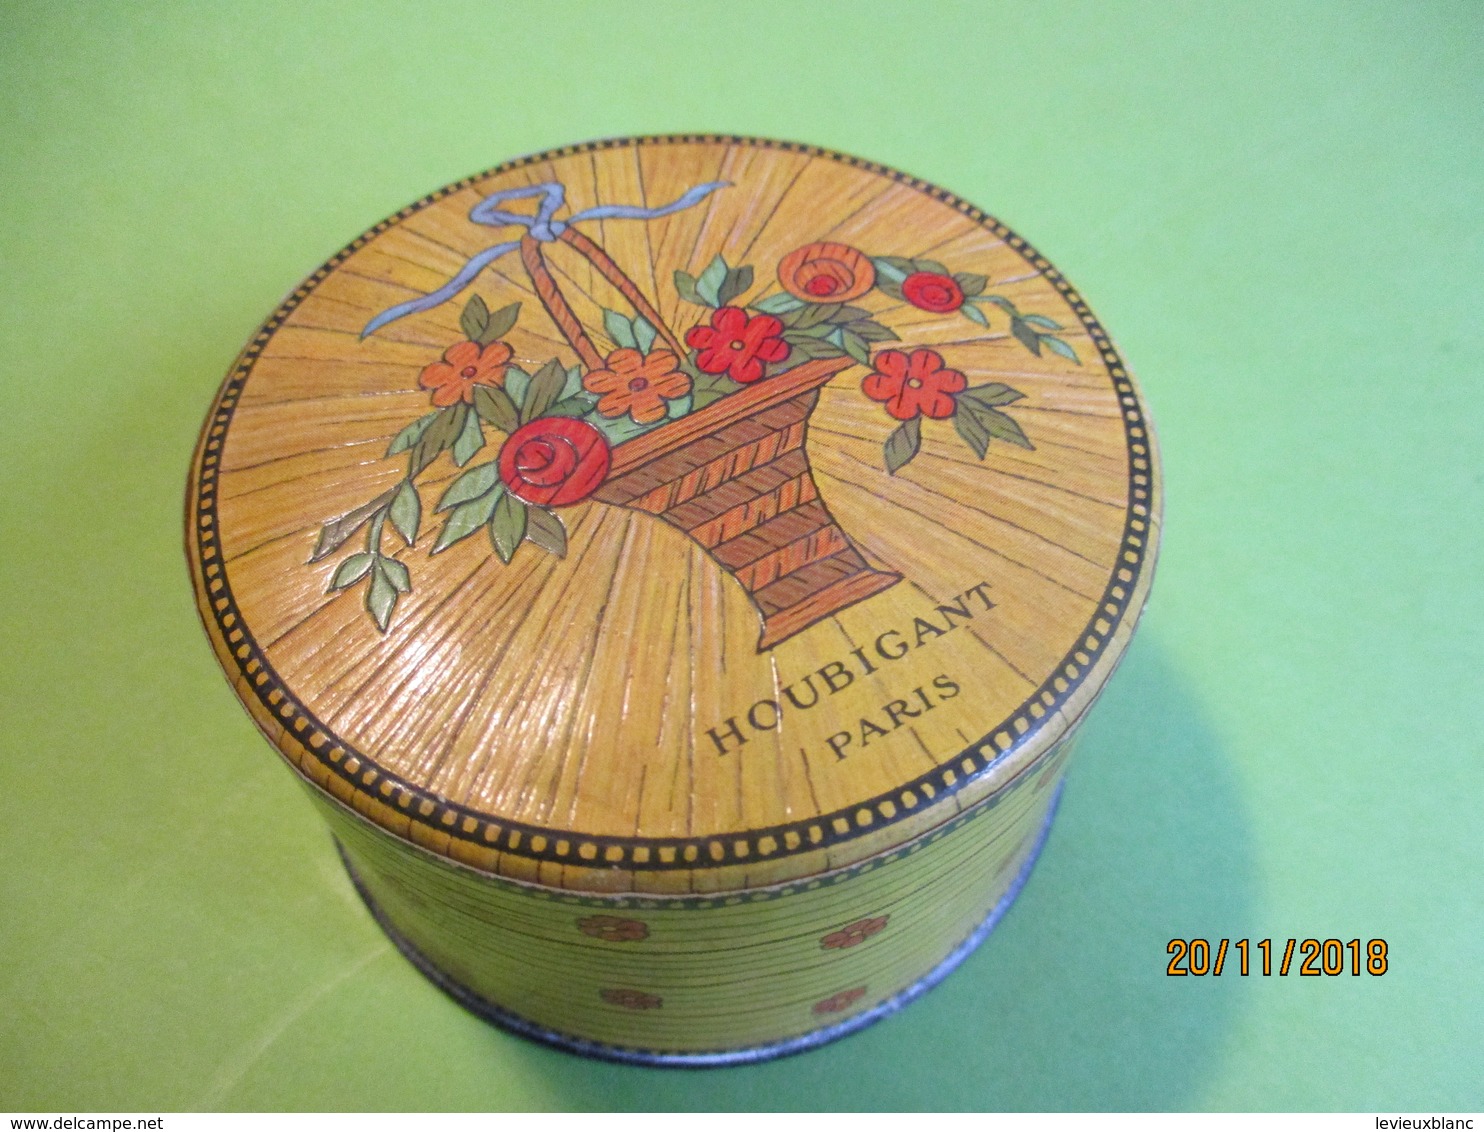 Maquillage/Boite de Poudre de riz/HOUBIGANT/Paris/ Quelques Fleurs Naturelles/Vers 1930-50    PARF184